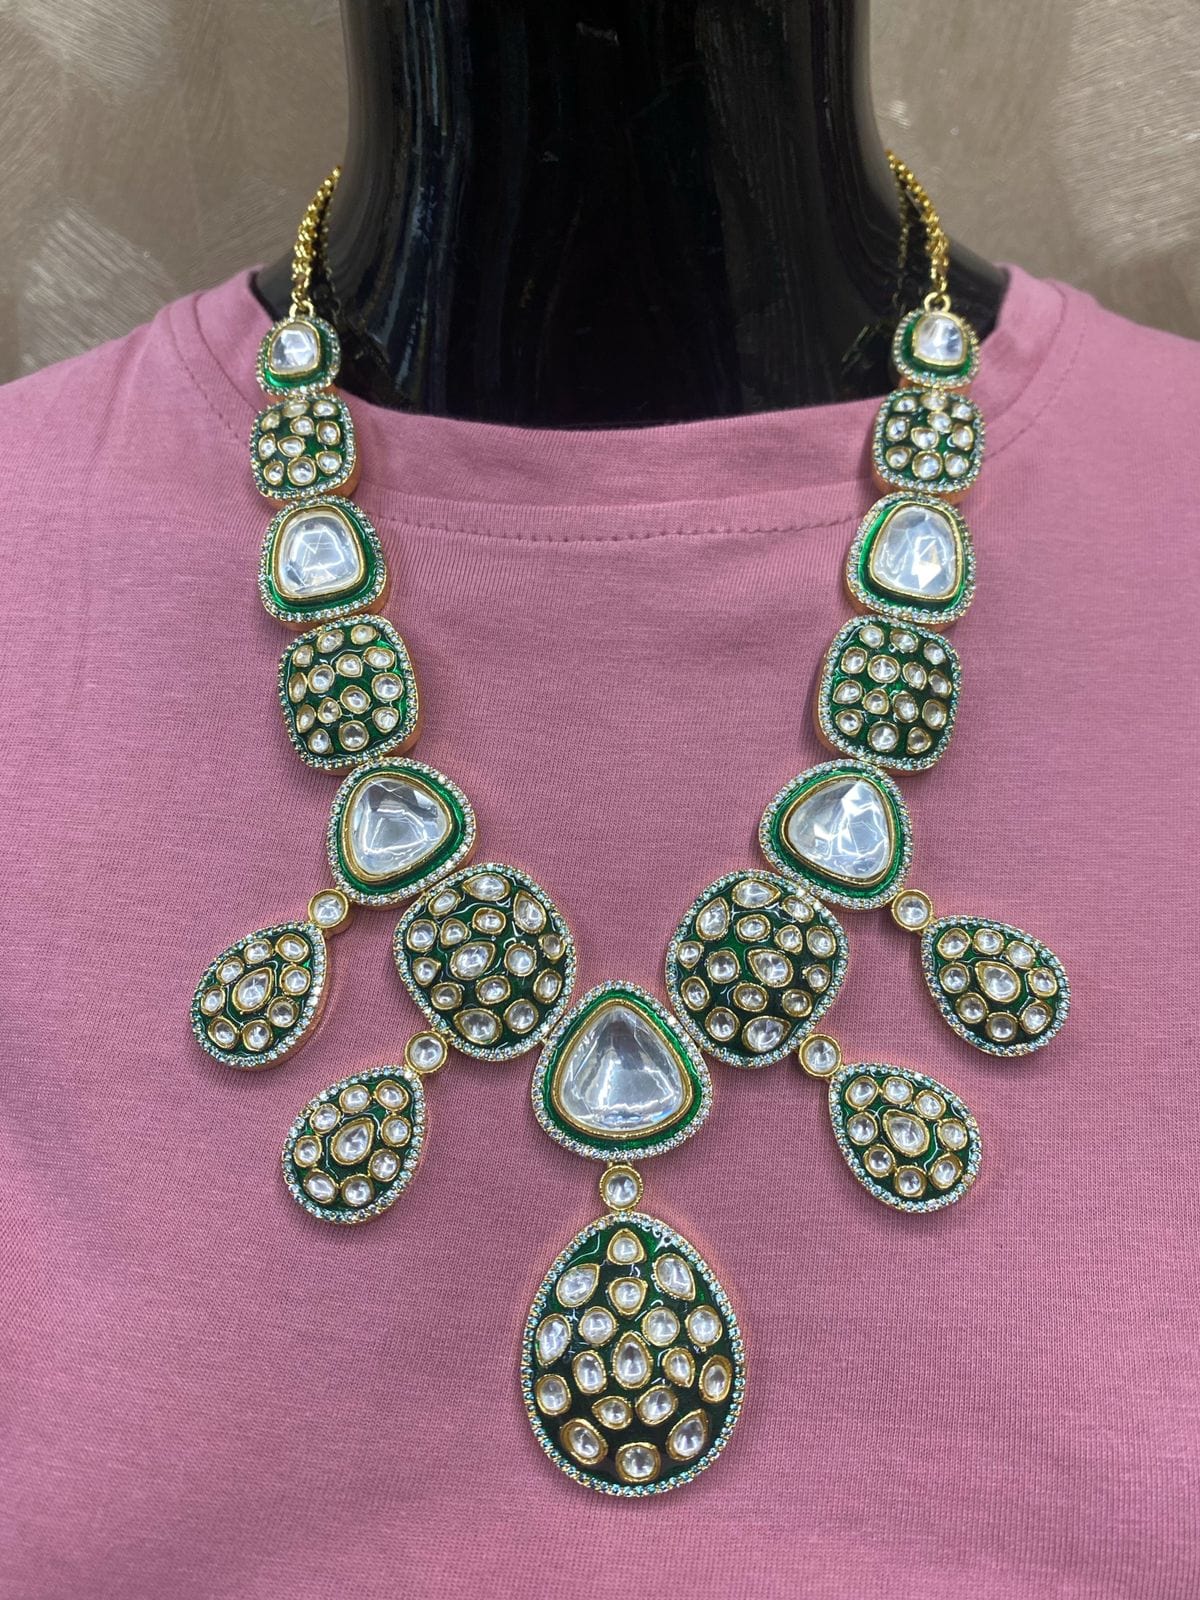 Designer Gold Plated Green Jadau Polki Wedding Necklace Set By Gehna Shop Bridal Necklace Sets